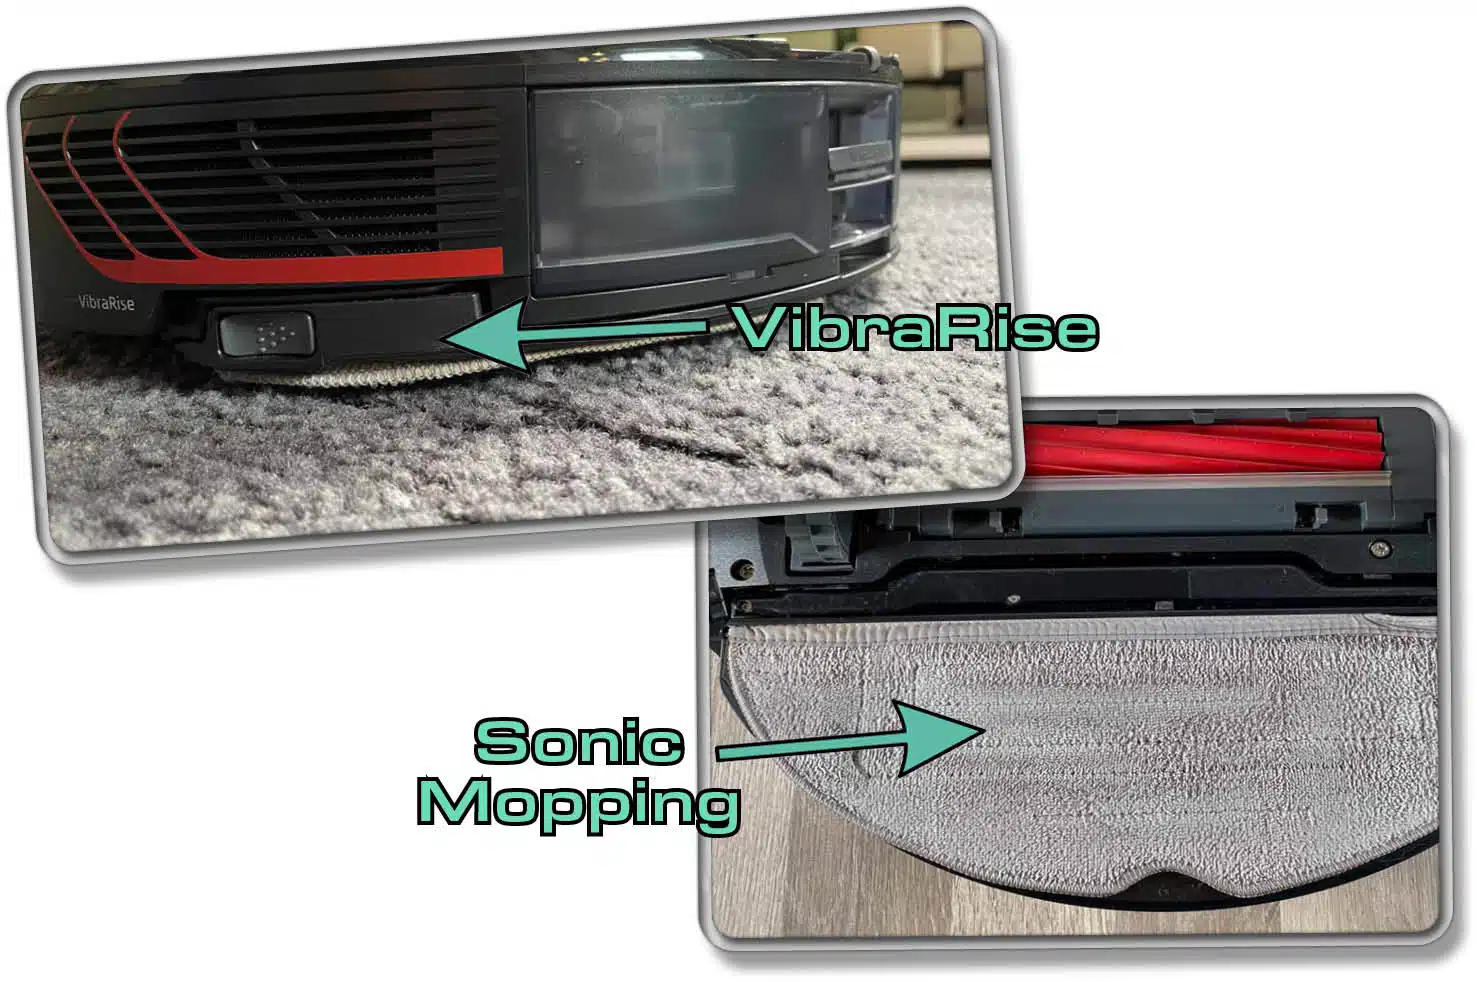 Das ist die Sonic Mopping und VibraRise Technologie des Roborock S7 MaxV. Er hebt das Wischpad über Teppich an. Beim Wischvorgang vibriert ein Modul auf der Wischplatte.